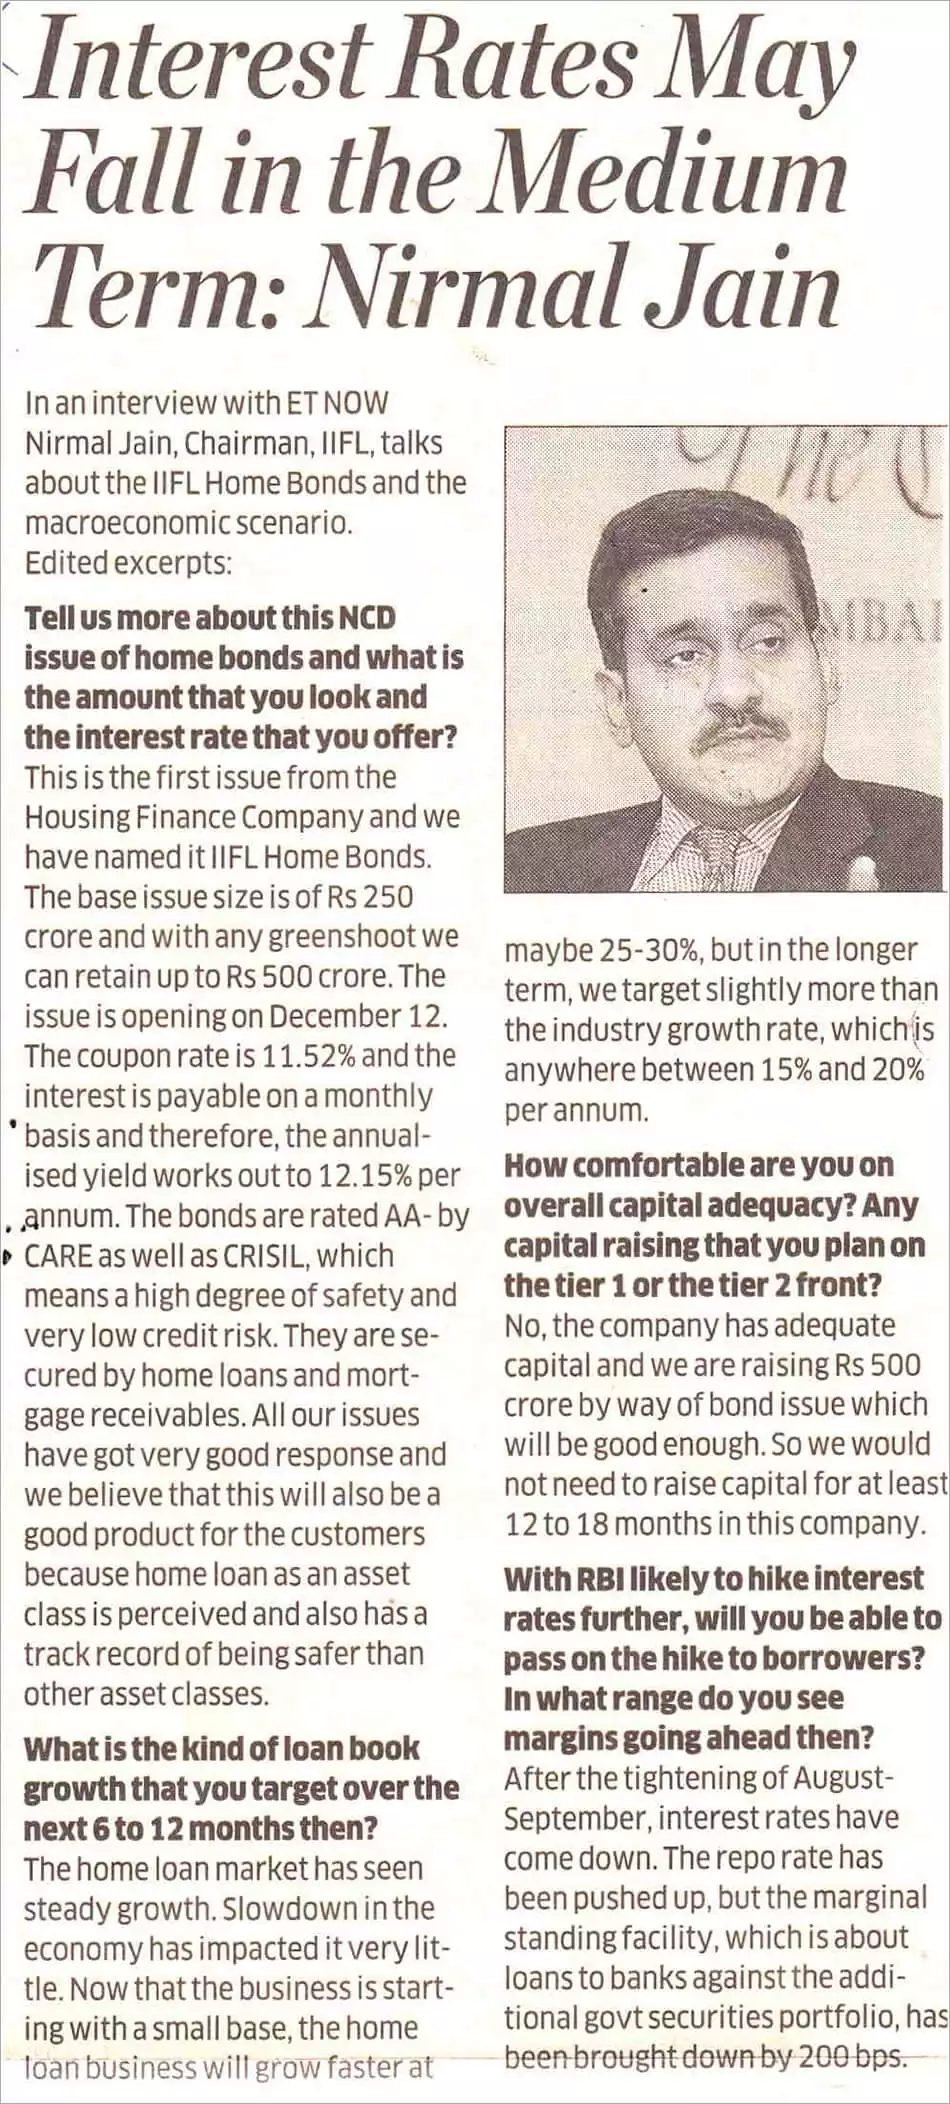 Interest Rates May Fall in the Medium Term: Nirmal Jain